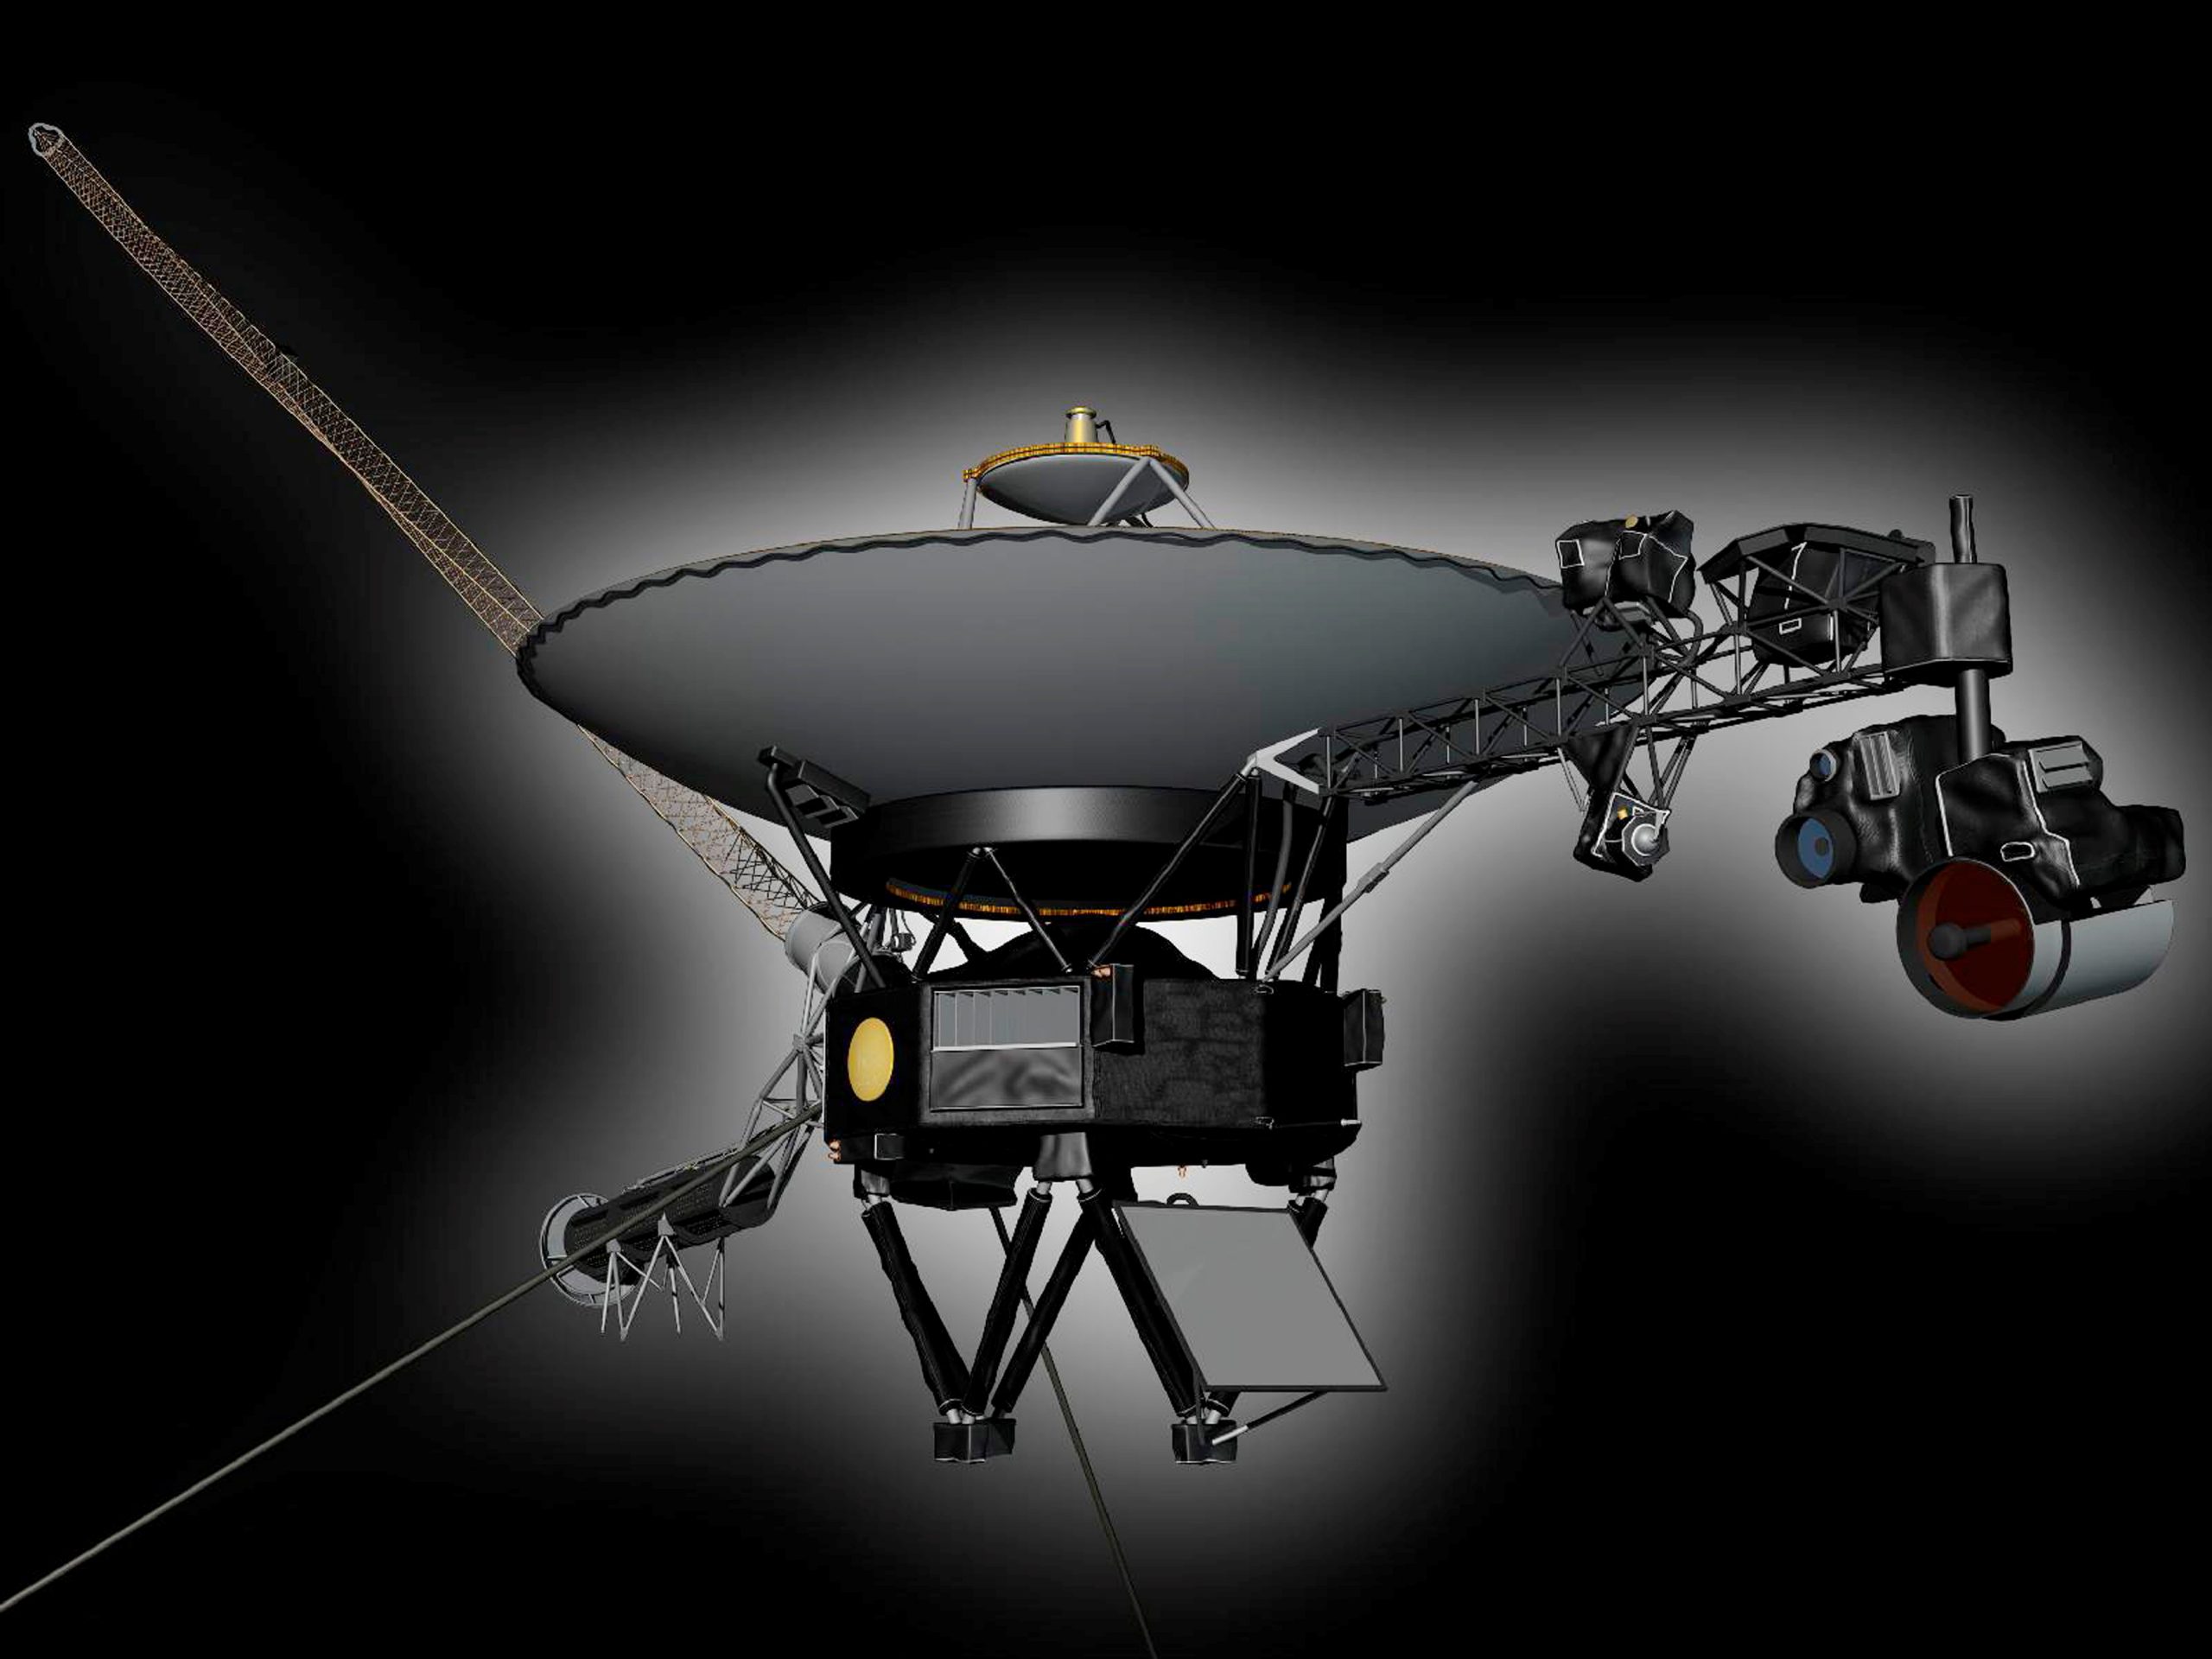 NASA: Το Voyager 1 «άκουσε» για πρώτη φορά τον απόκοσμο βόμβο του μεσοαστρικού διαστήματος